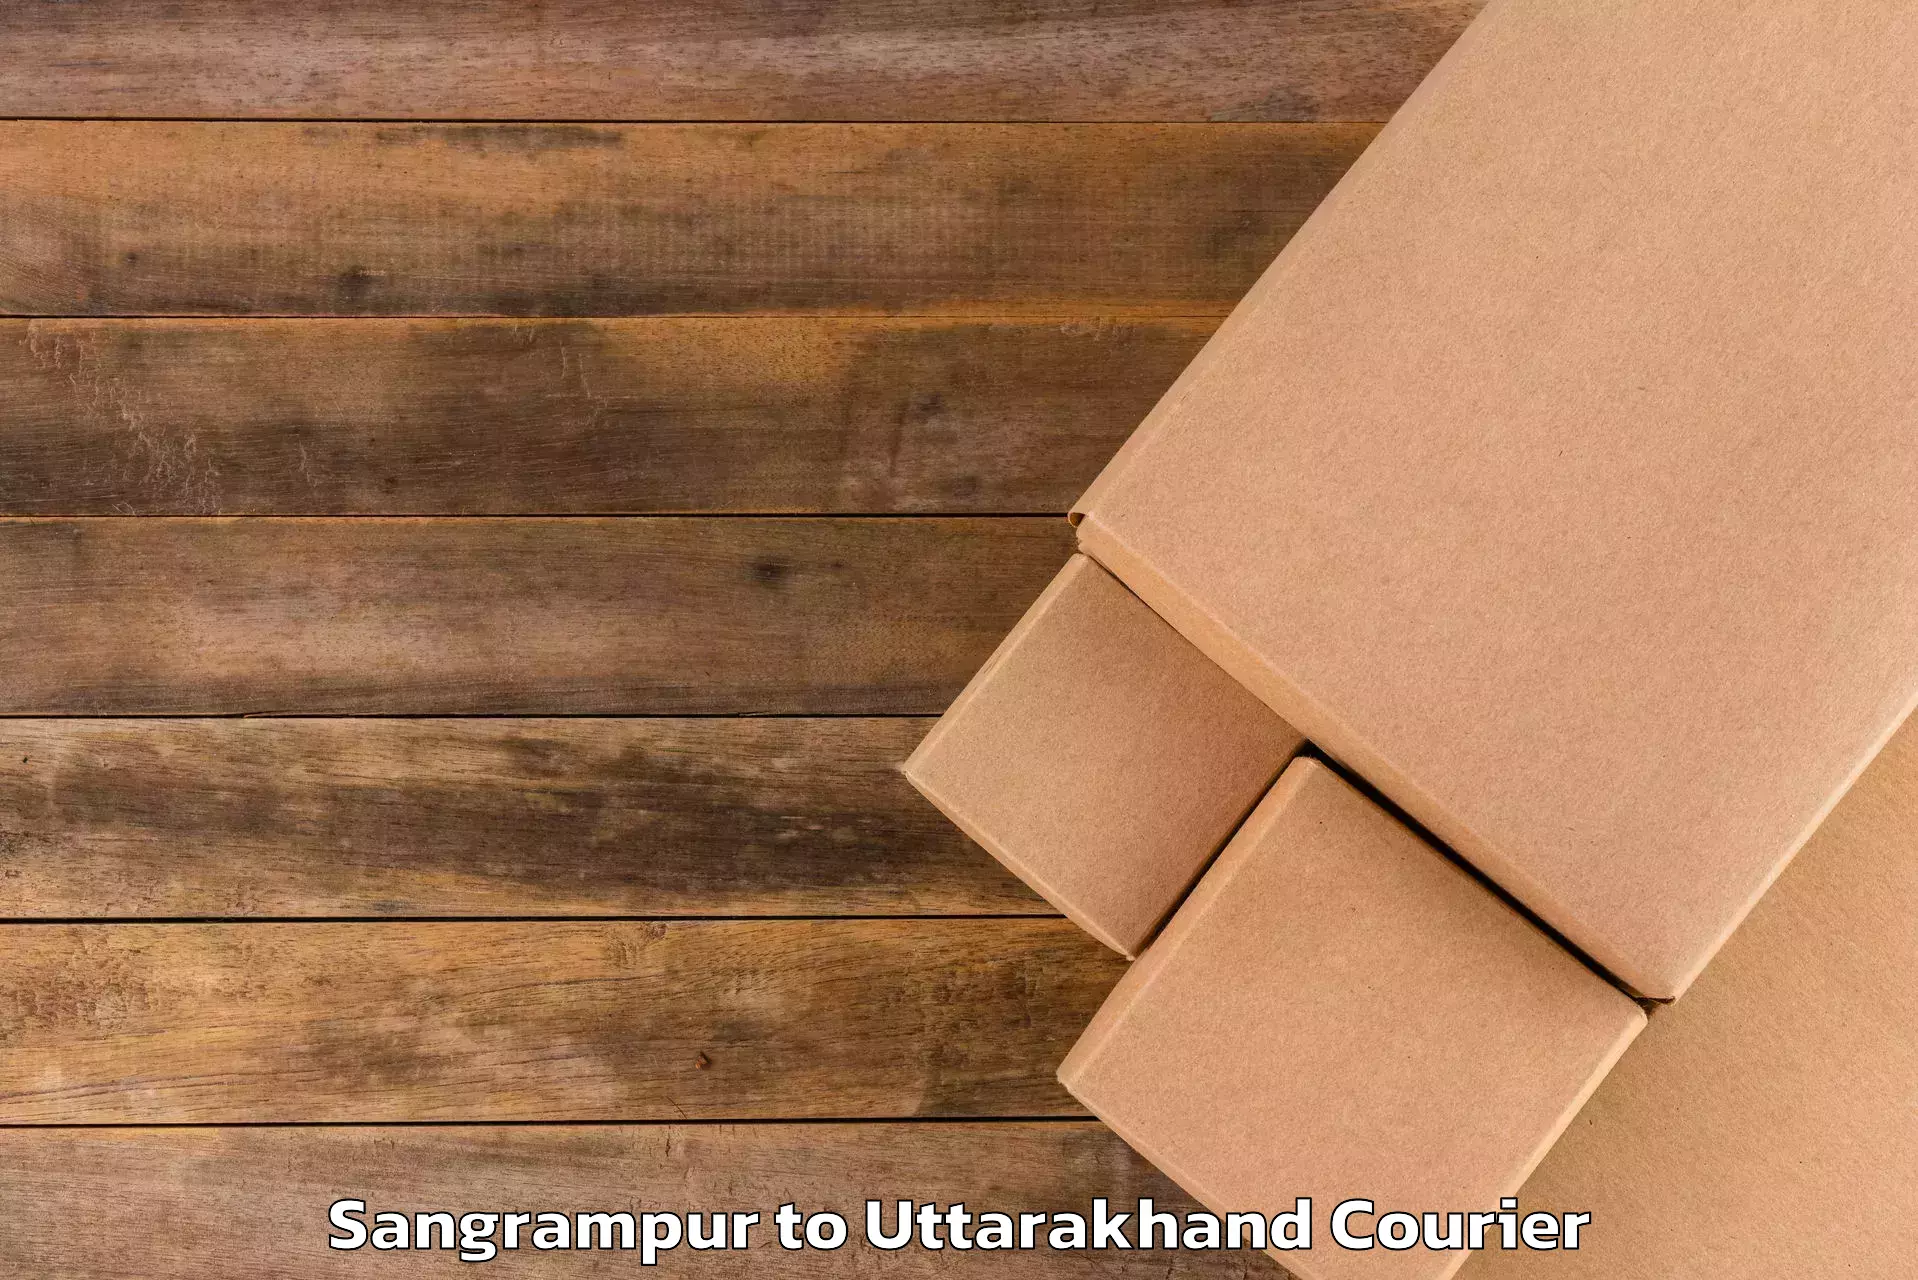 Baggage transport scheduler Sangrampur to Kashipur